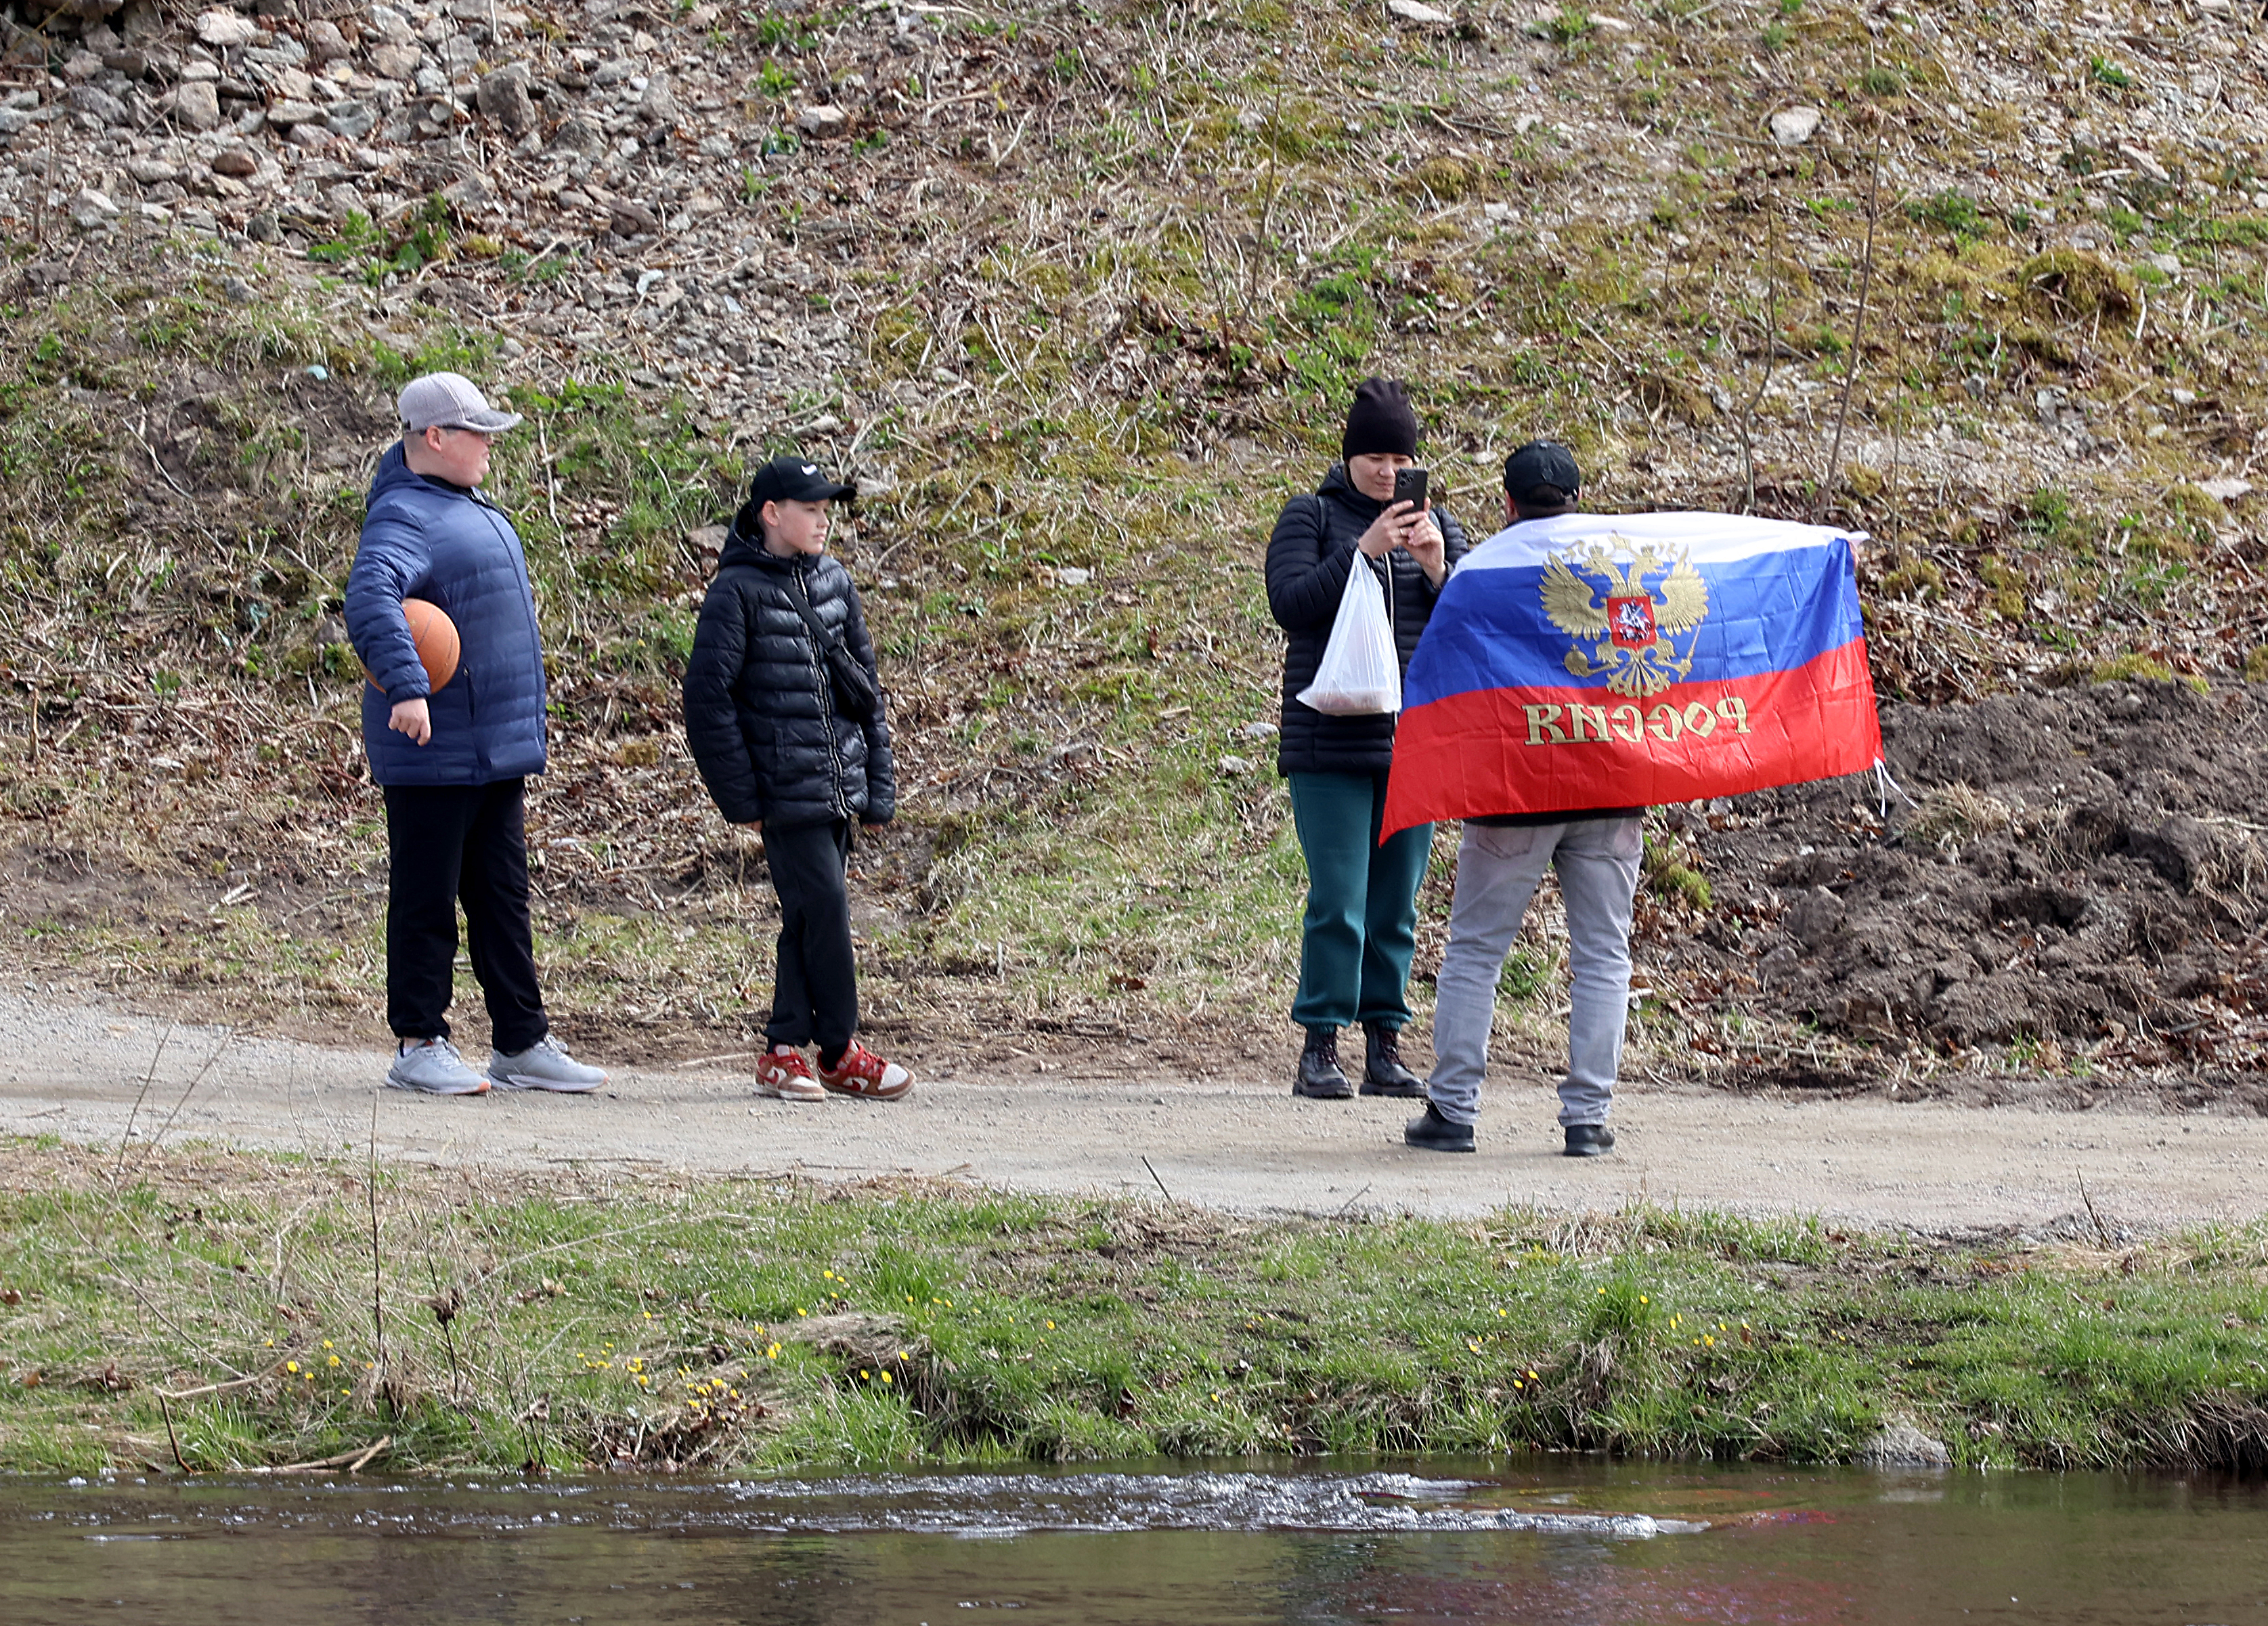 Währenddessen hielten die Russen auf der anderen Seite des Flusses eine russische Flagge hoch